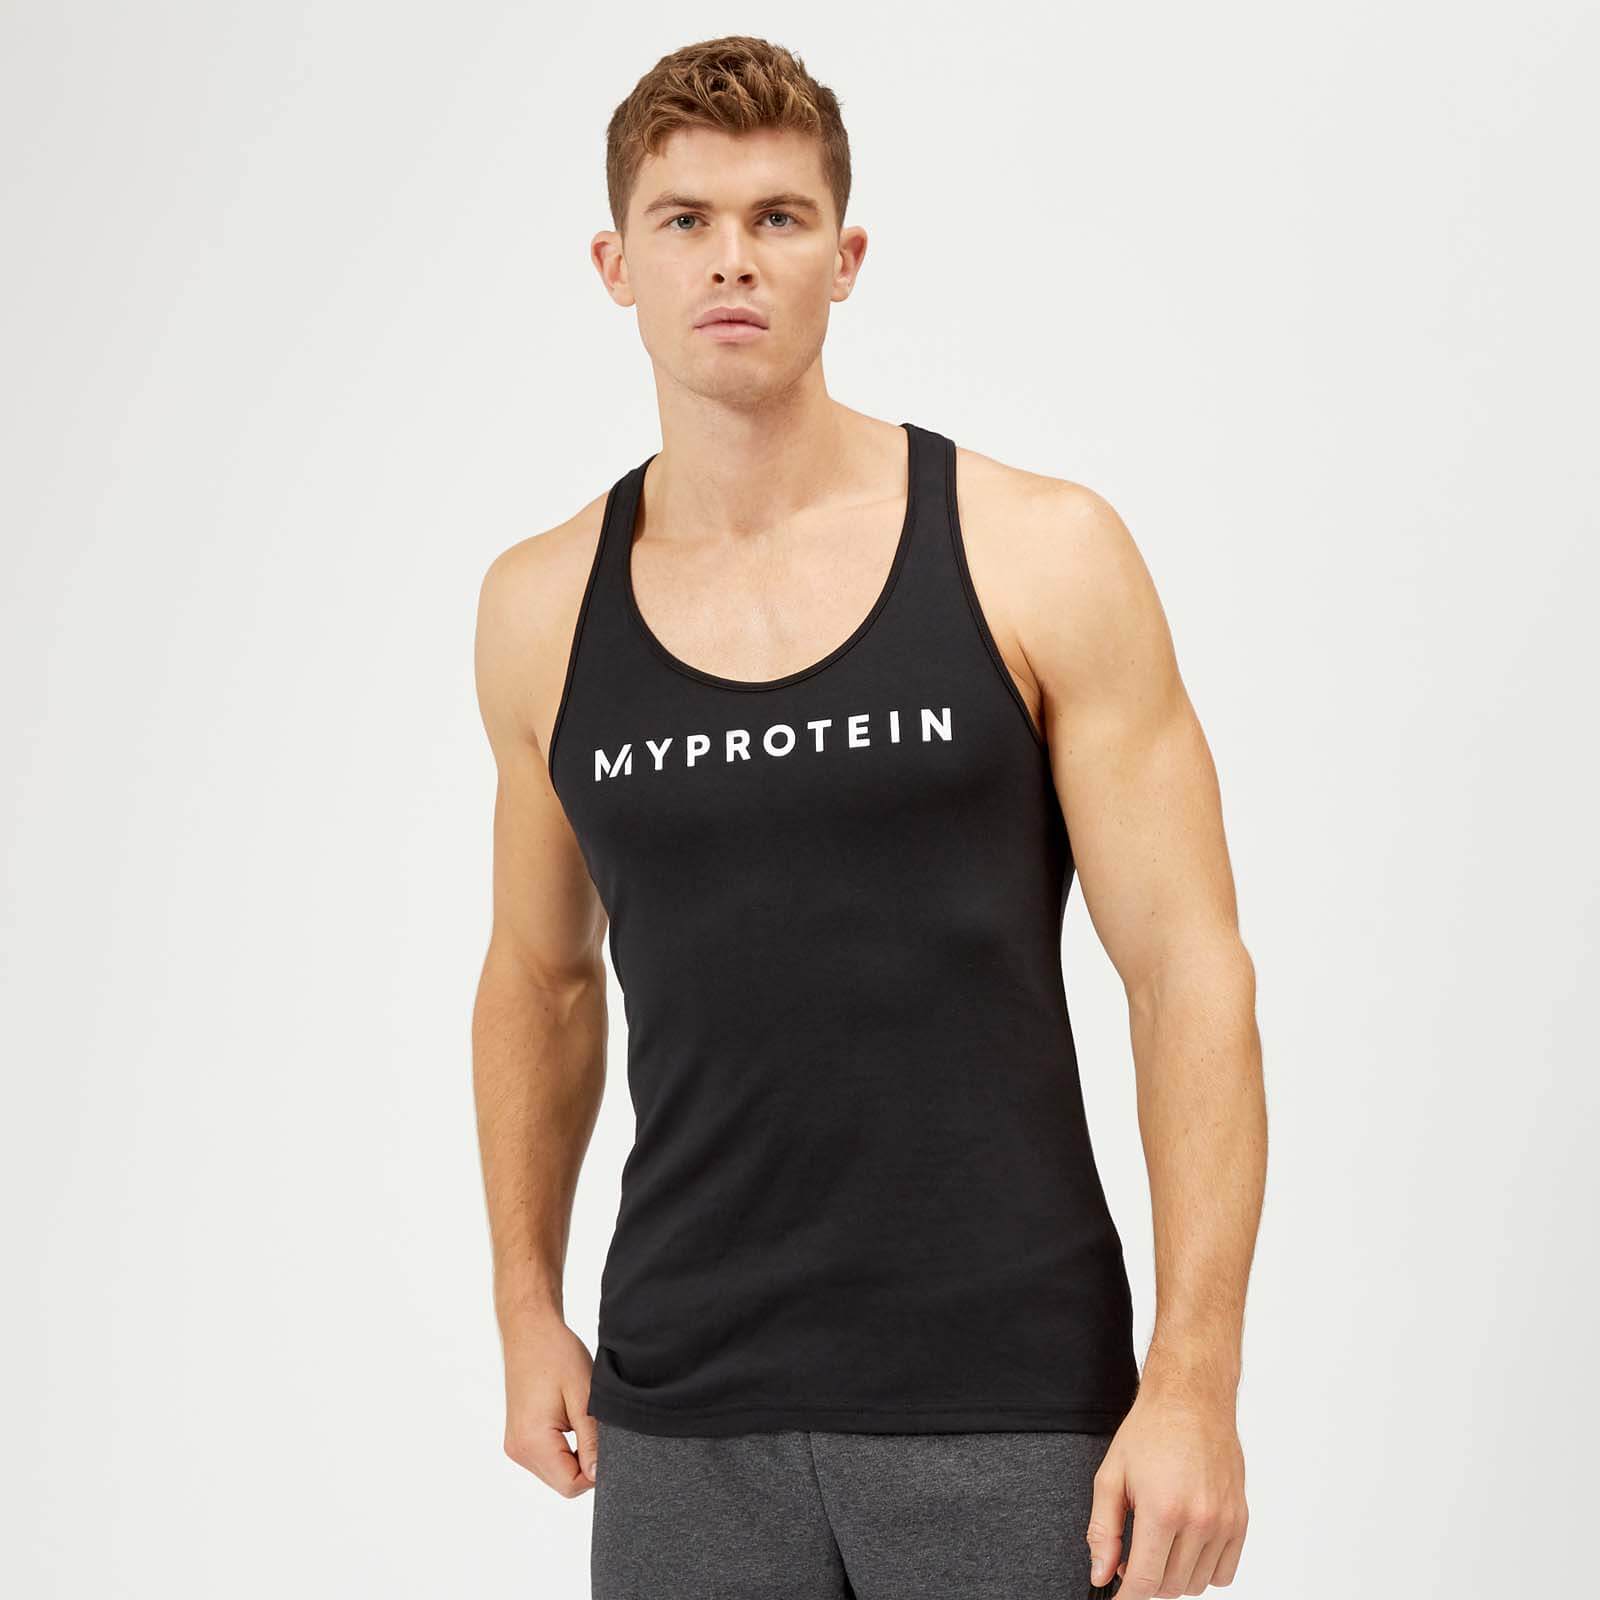 Myprotein Het original stringerhemd - L